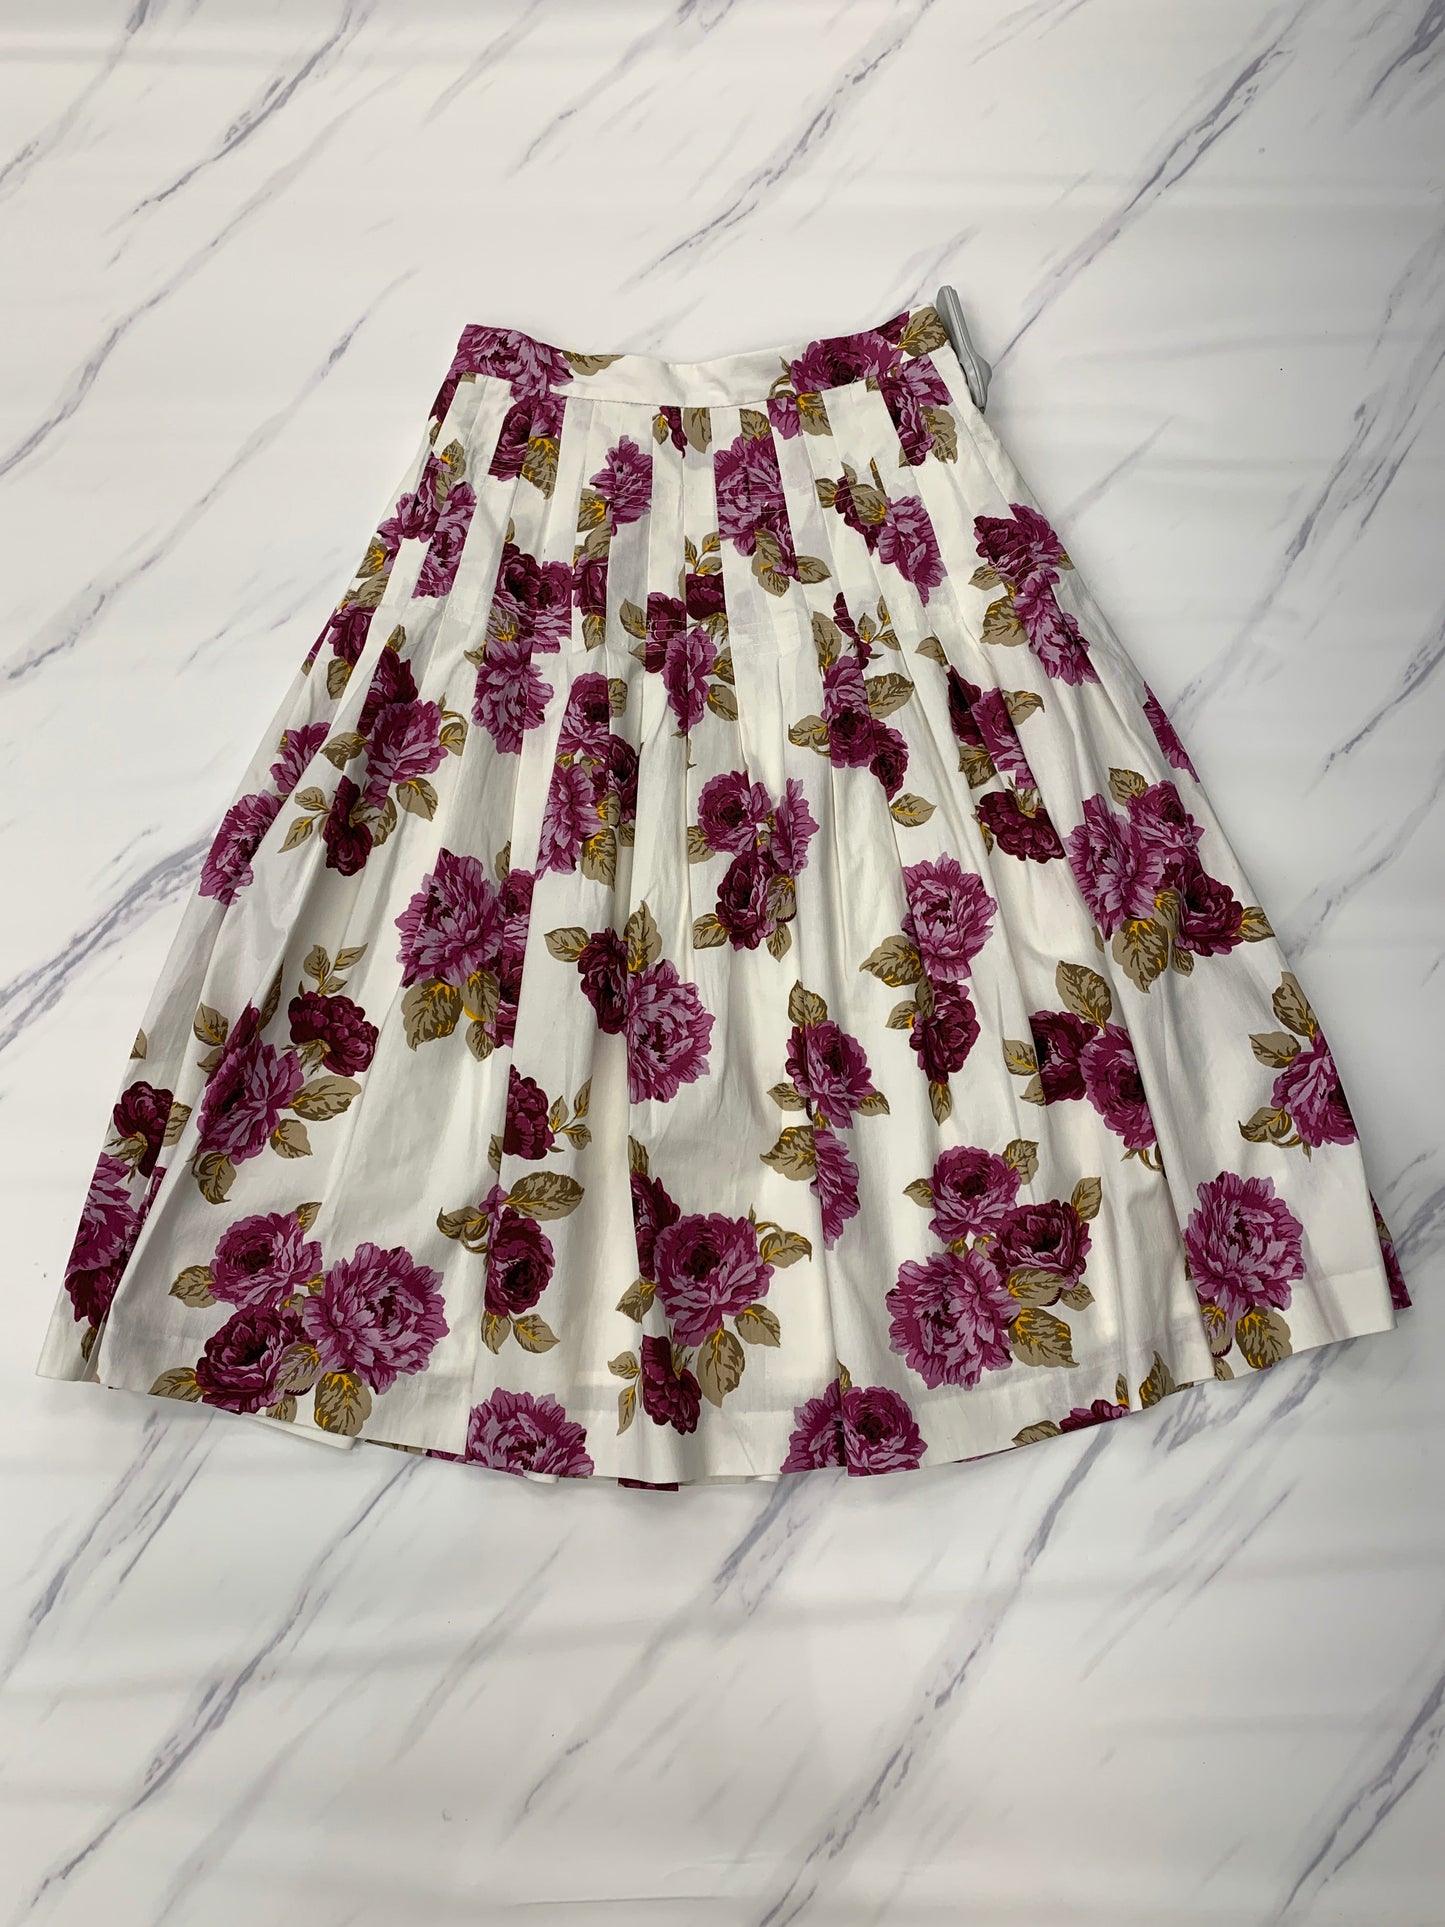 Floral Print Skirt Maxi Antonio Melani, Size 2